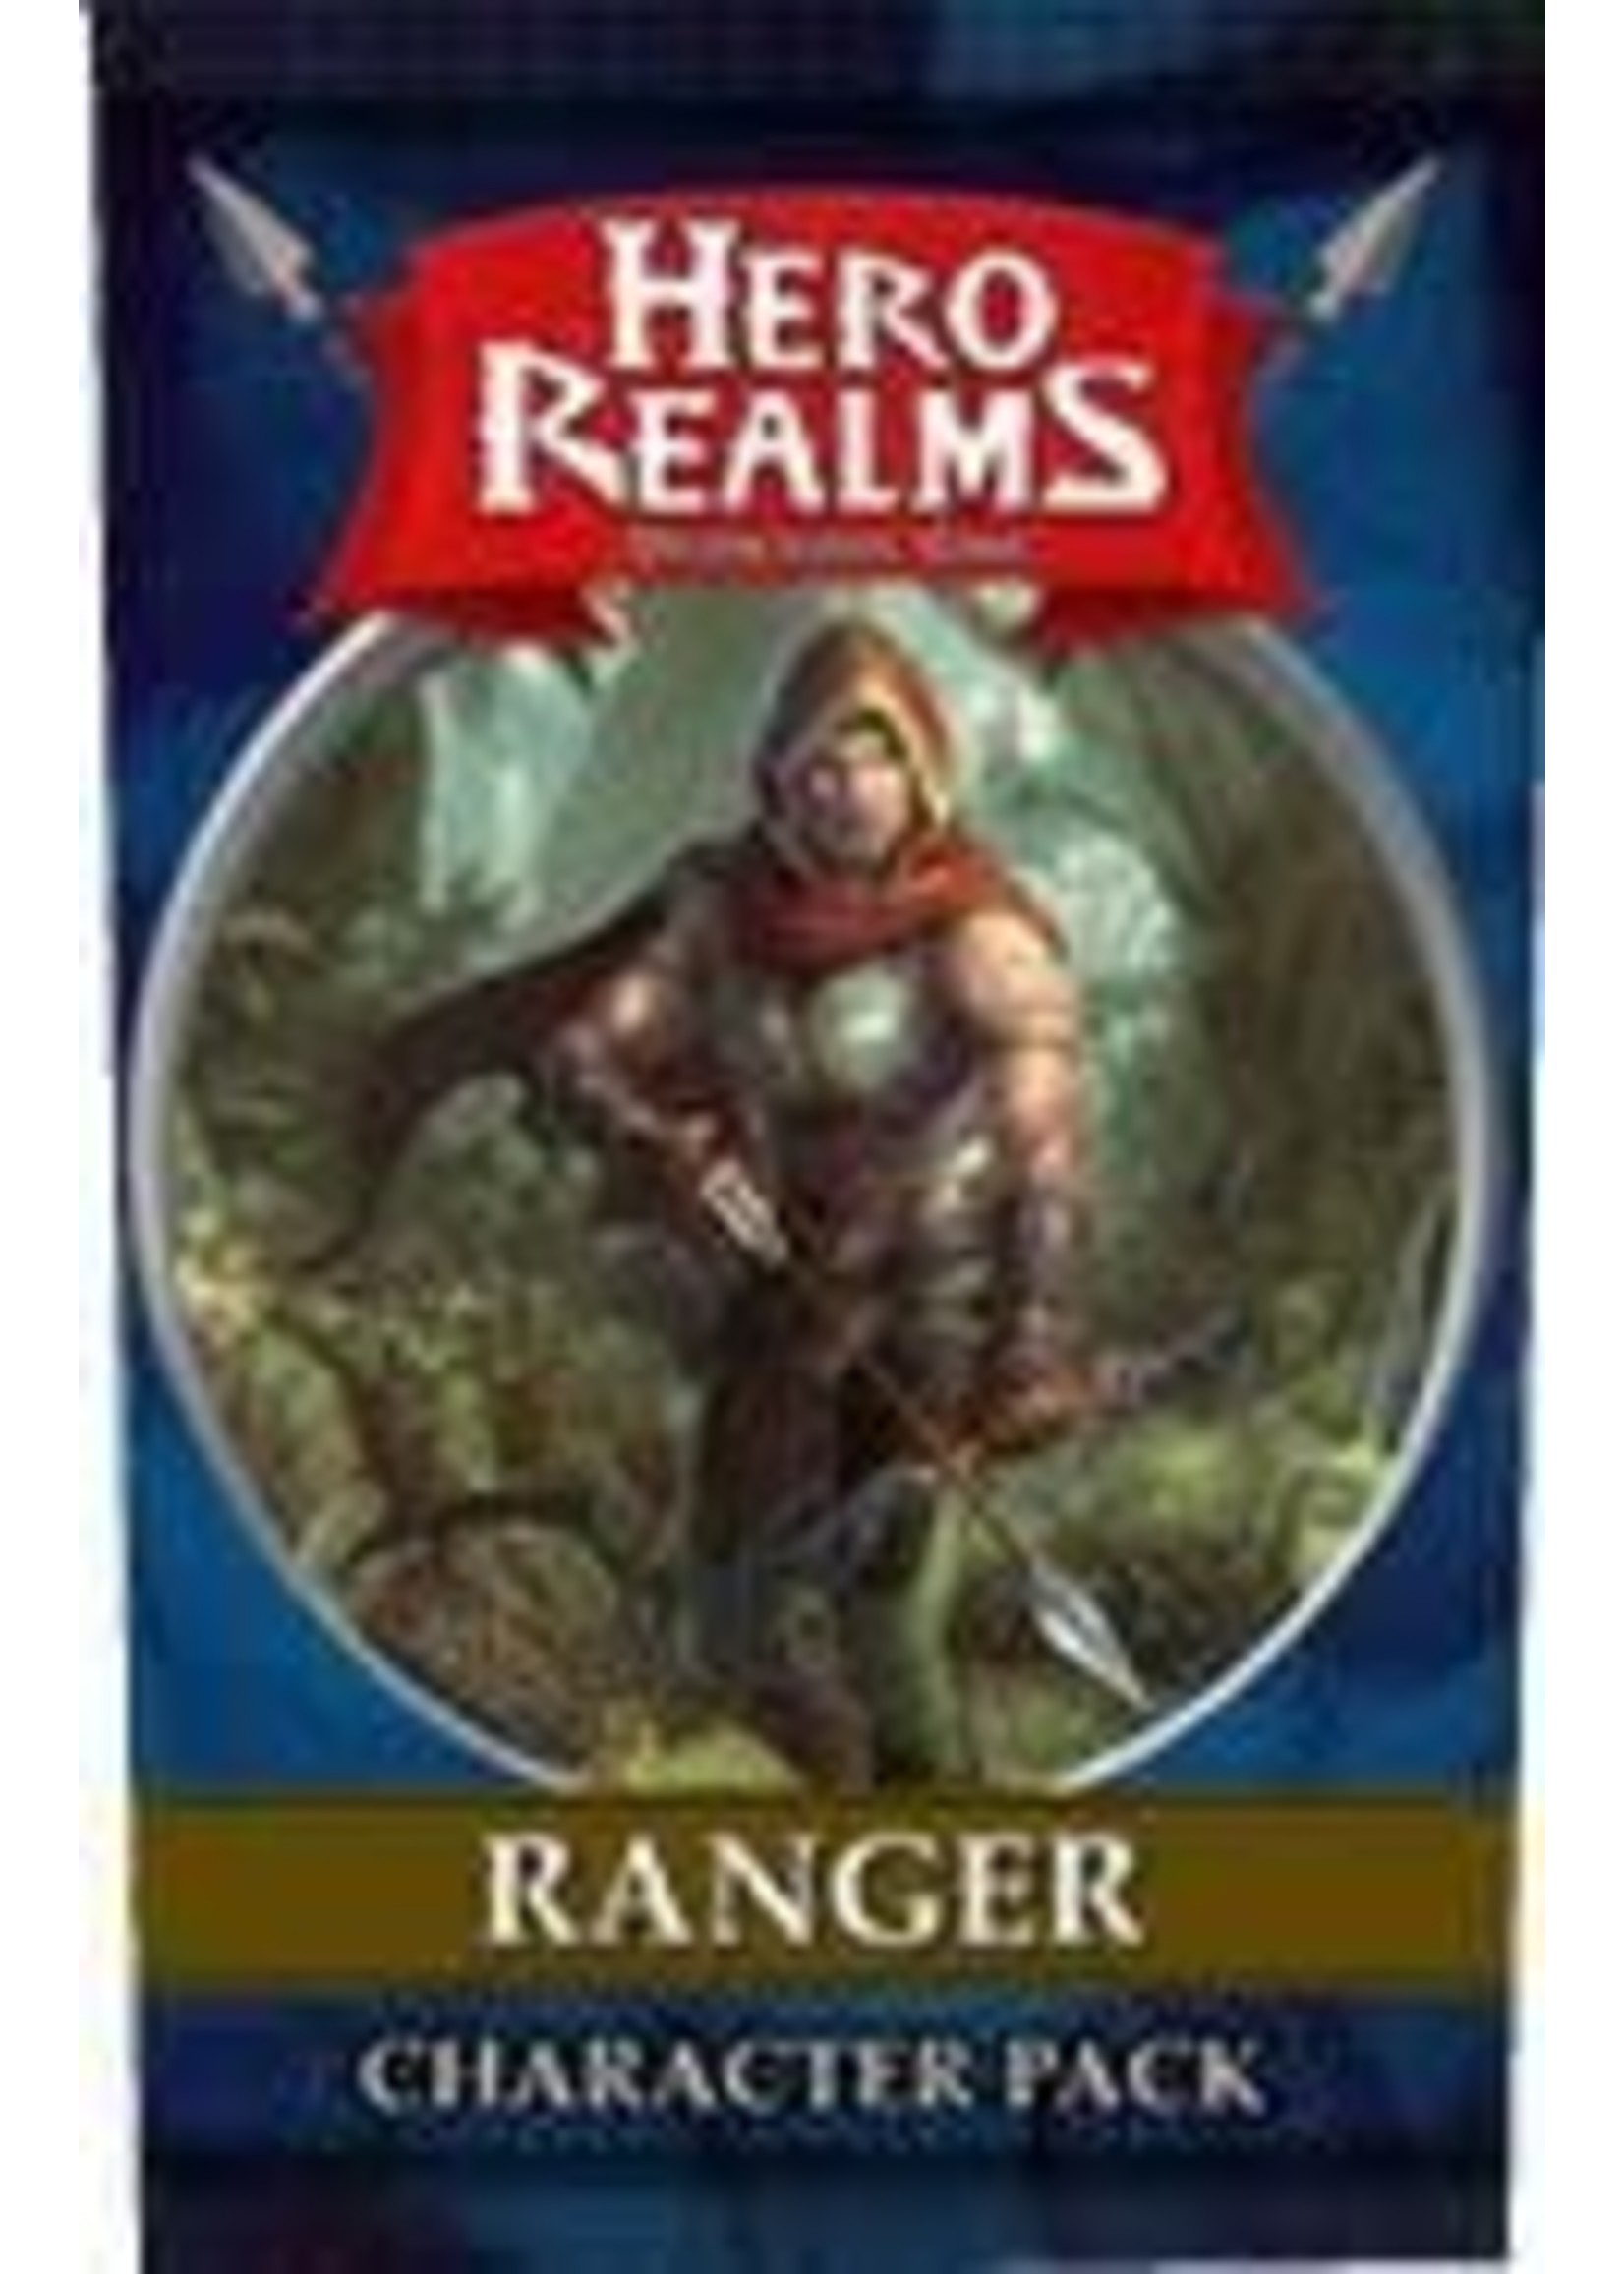 Hero Realms: Ranger Pack